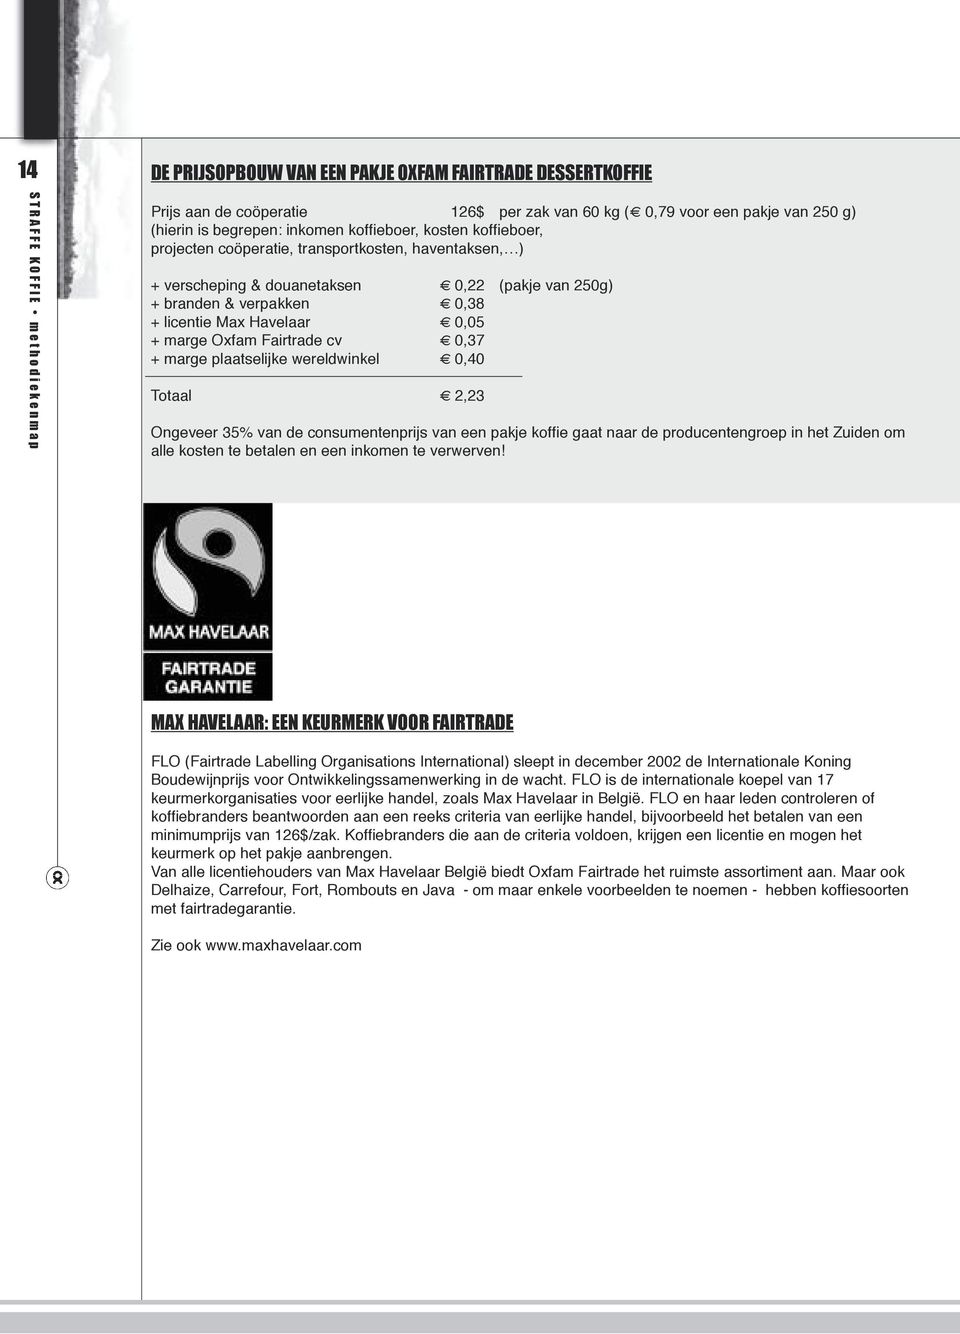 licentie Max Havelaar 0,05 + marge Oxfam Fairtrade cv 0,37 + marge plaatselijke wereldwinkel 0,40 Totaal 2,23 Ongeveer 35% van de consumentenprijs van een pakje koffi e gaat naar de producentengroep